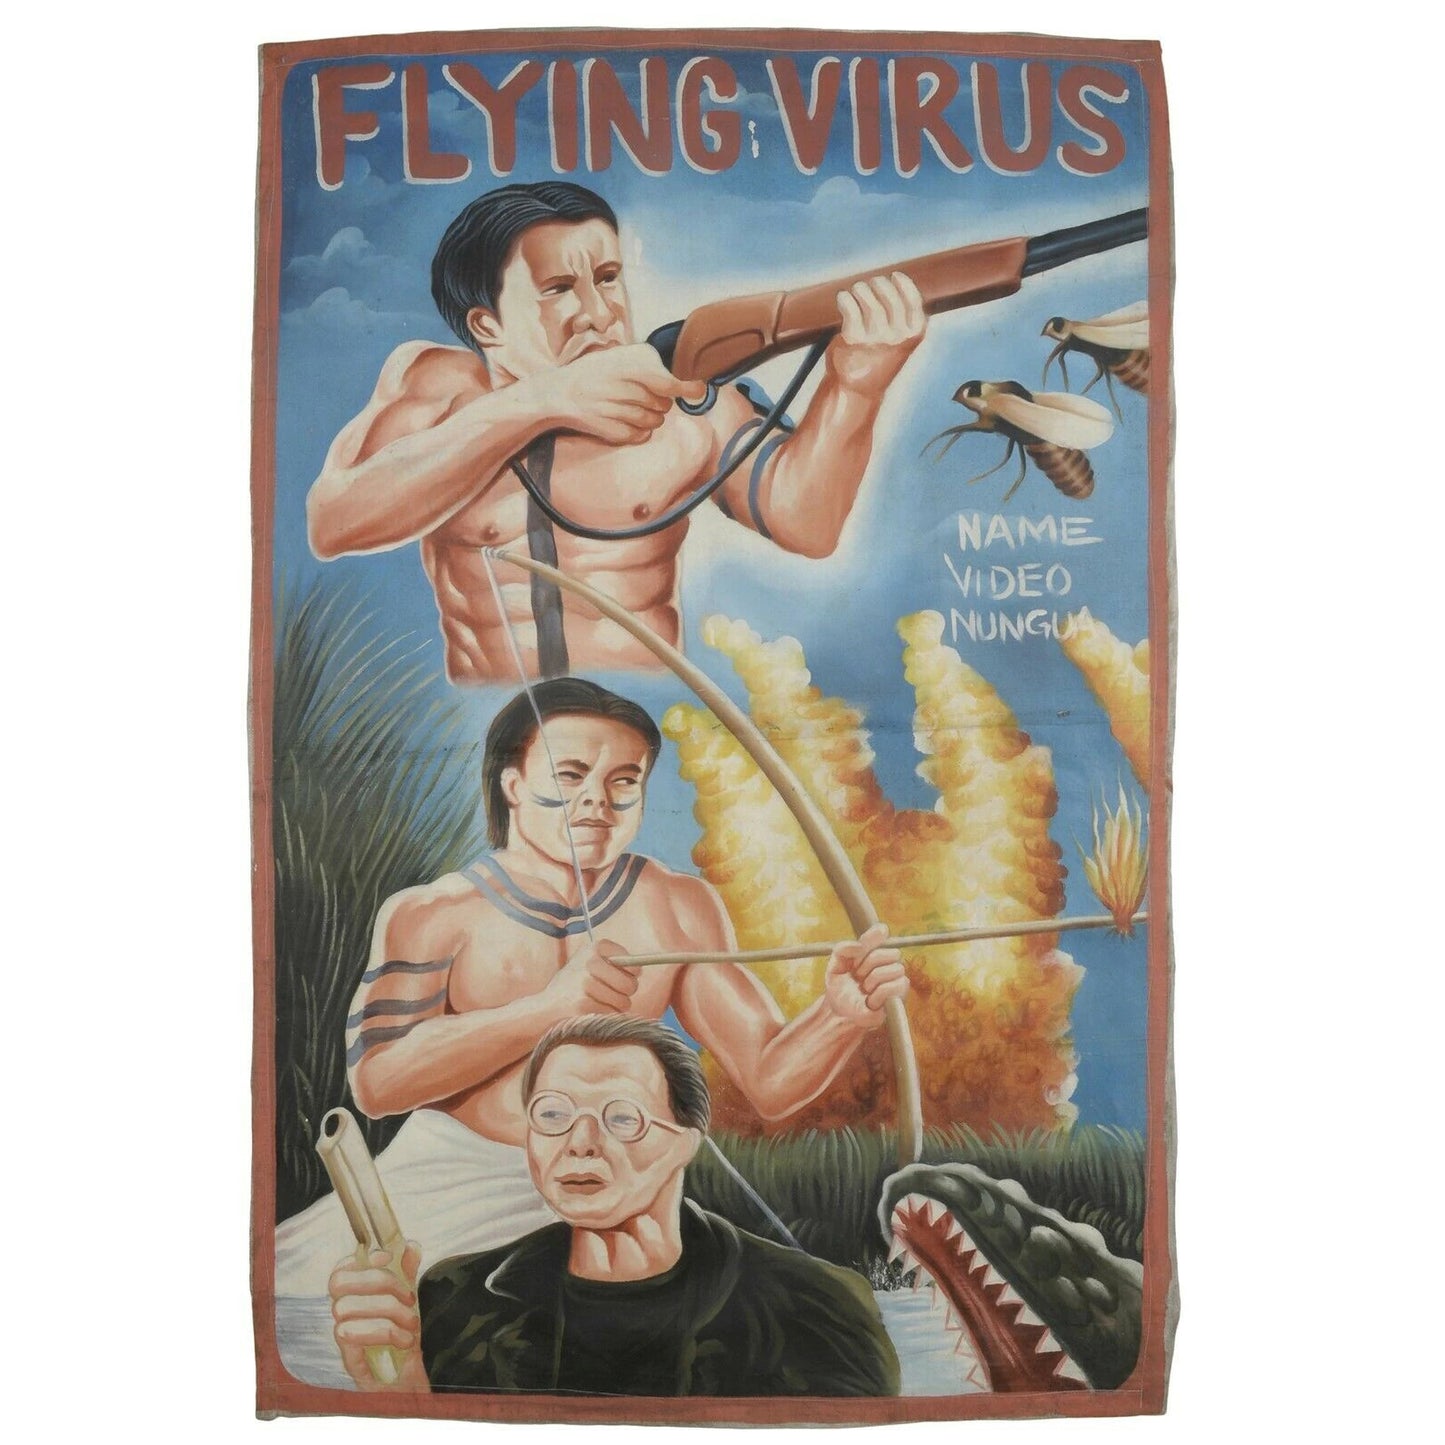 Ручная роспись Ганы плакат кино кино холст мешок муки искусства летающий вирус - Tribalgh